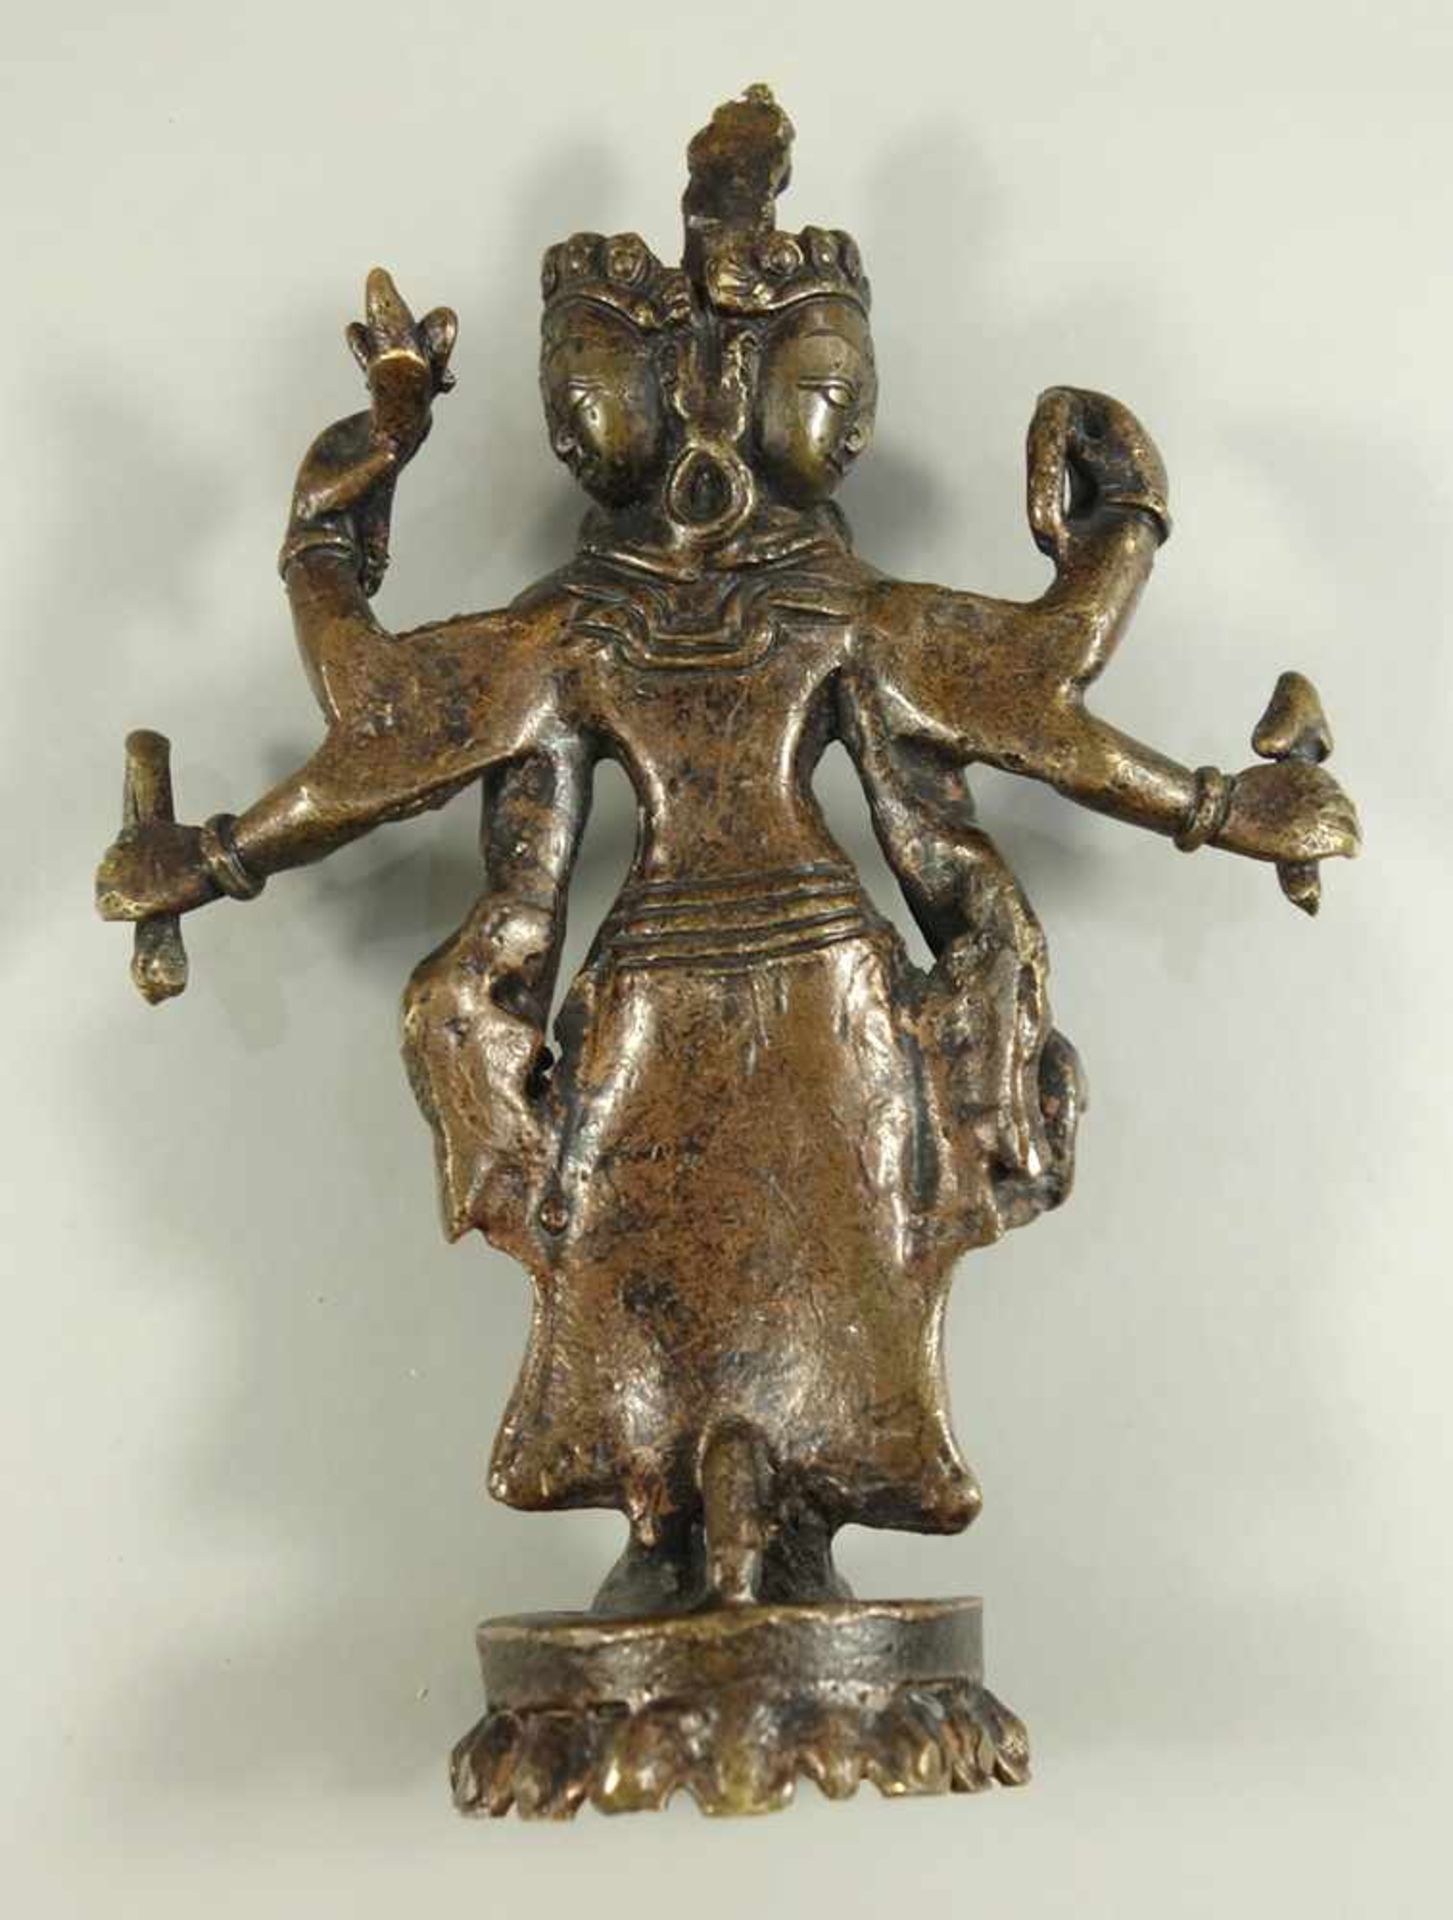 5 überwiegend weibliche Gottheiten, Südostasien, 20. Jh., verschiedene geschnitzte Edelhölzer, - Bild 3 aus 3